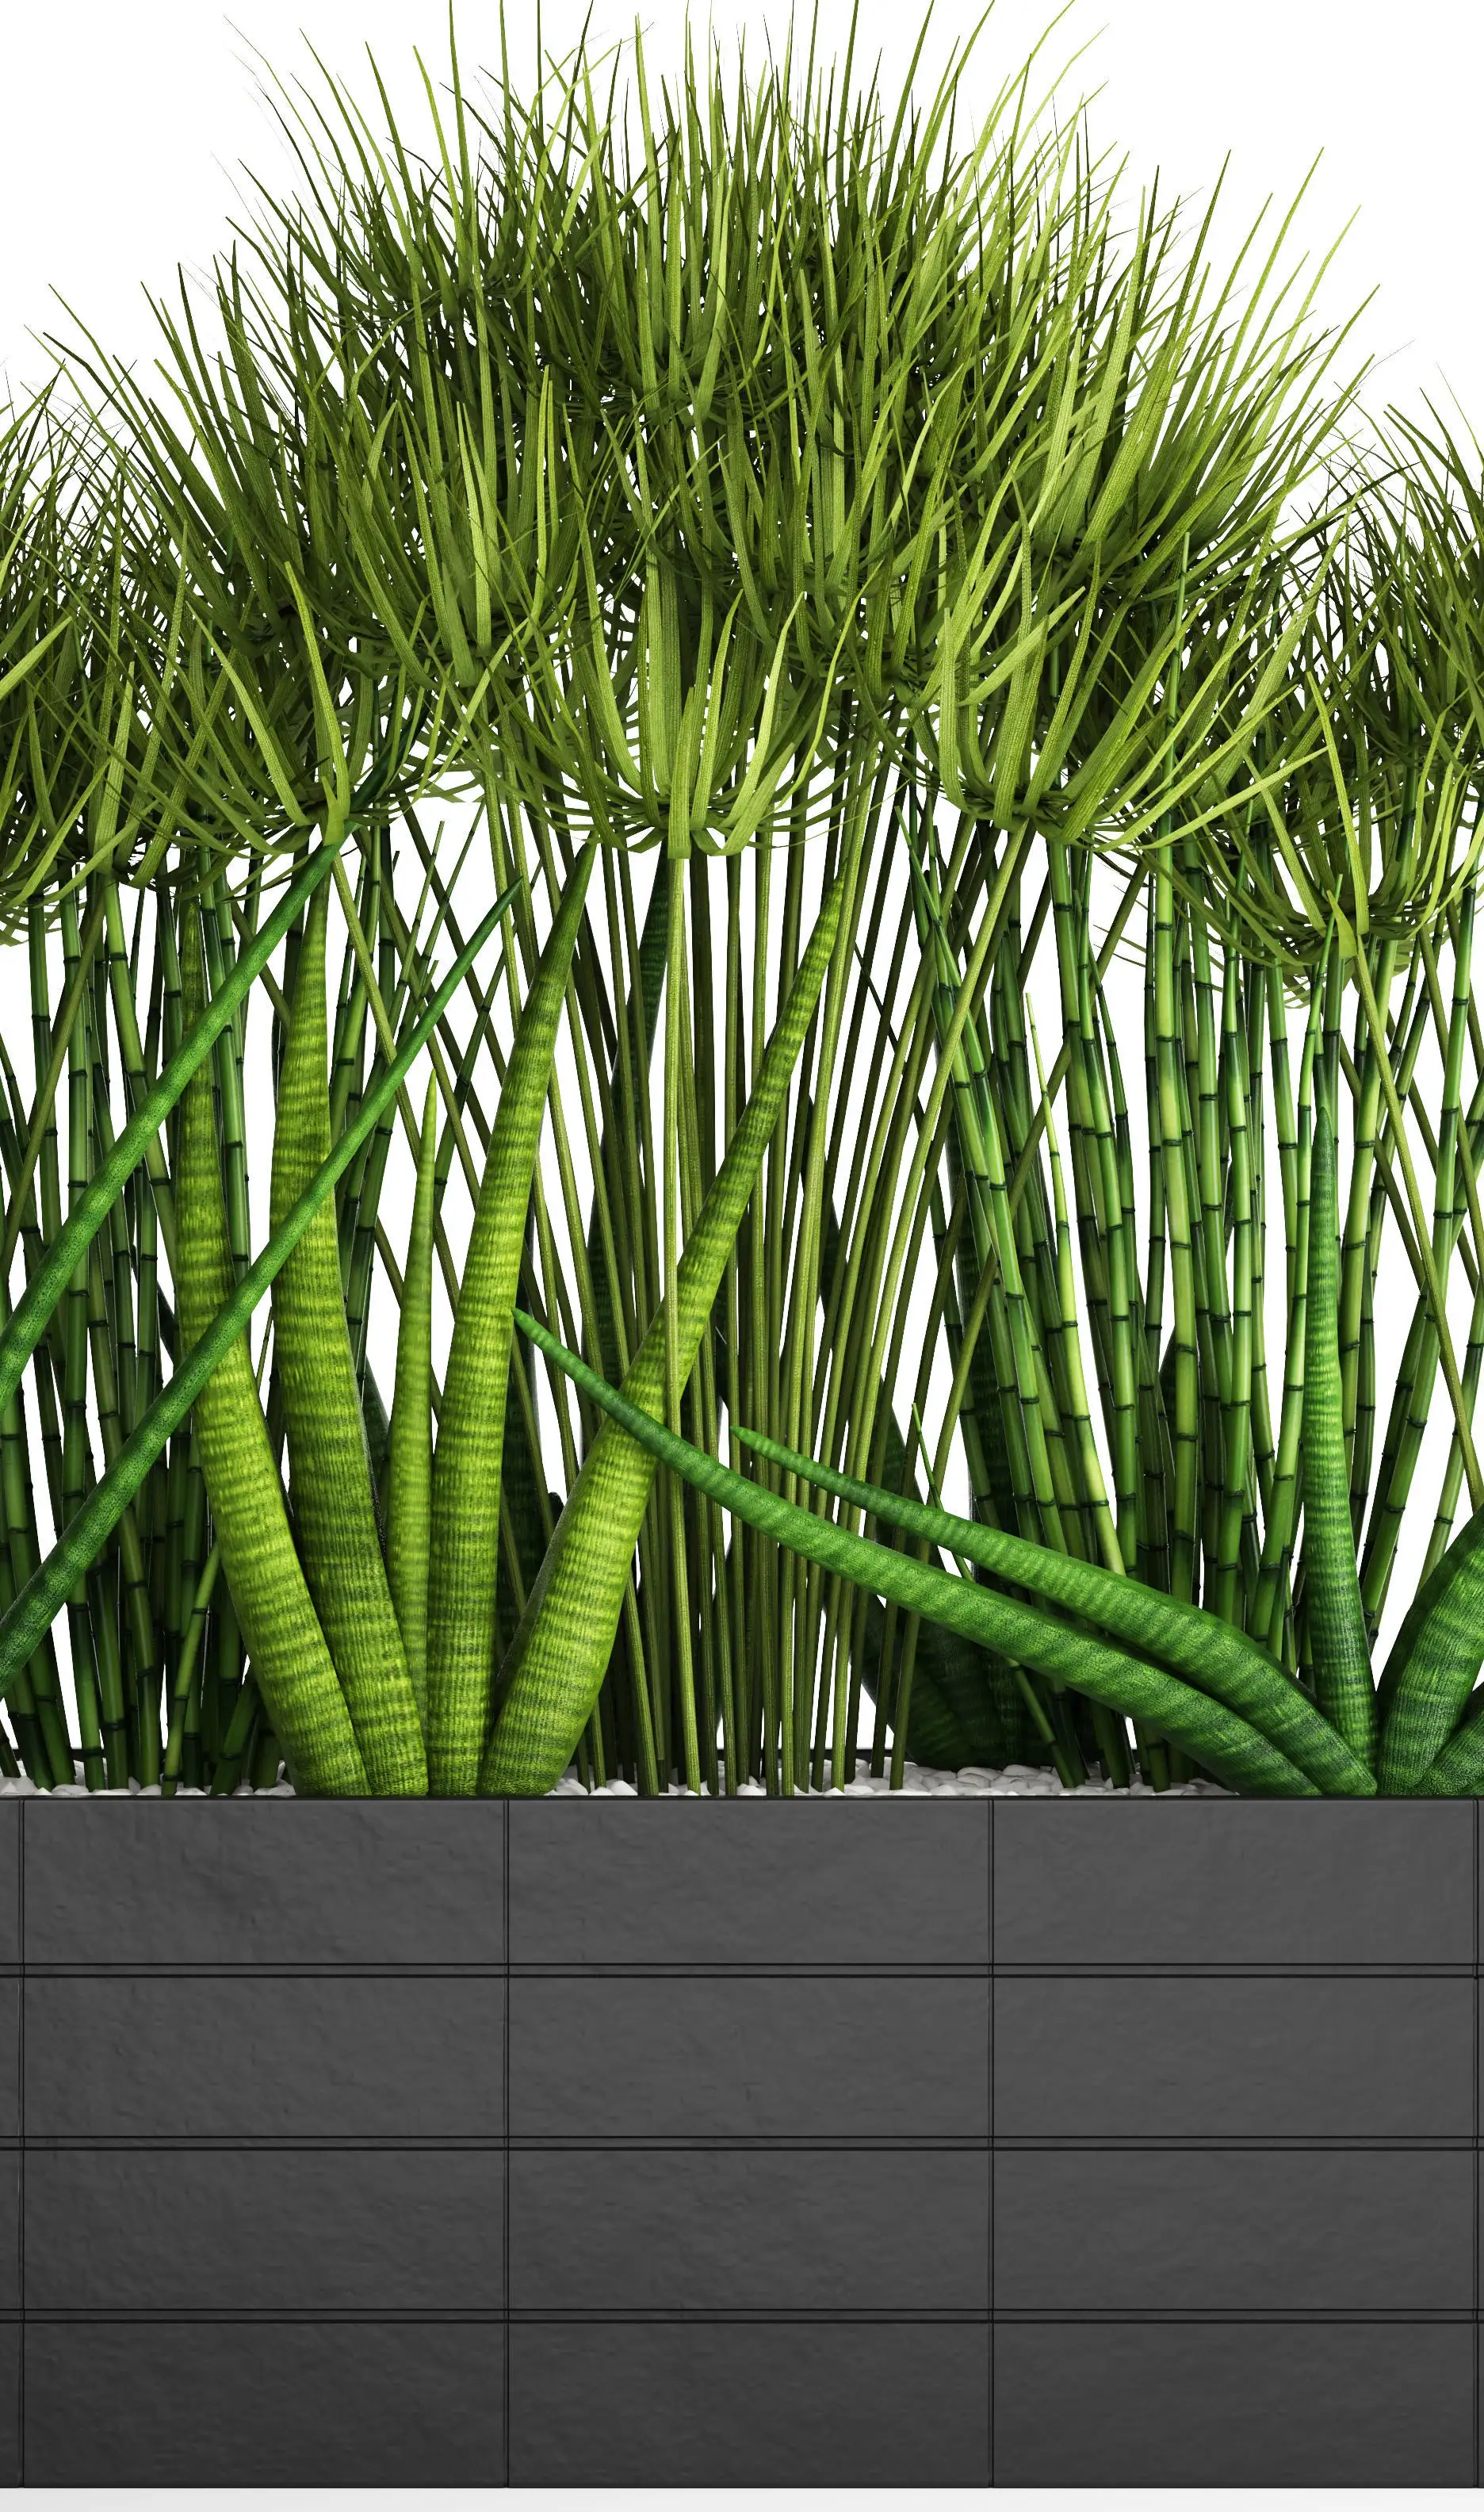 دانلود مدل سه بعدی گیاهان آپارتمانی 40 - 16